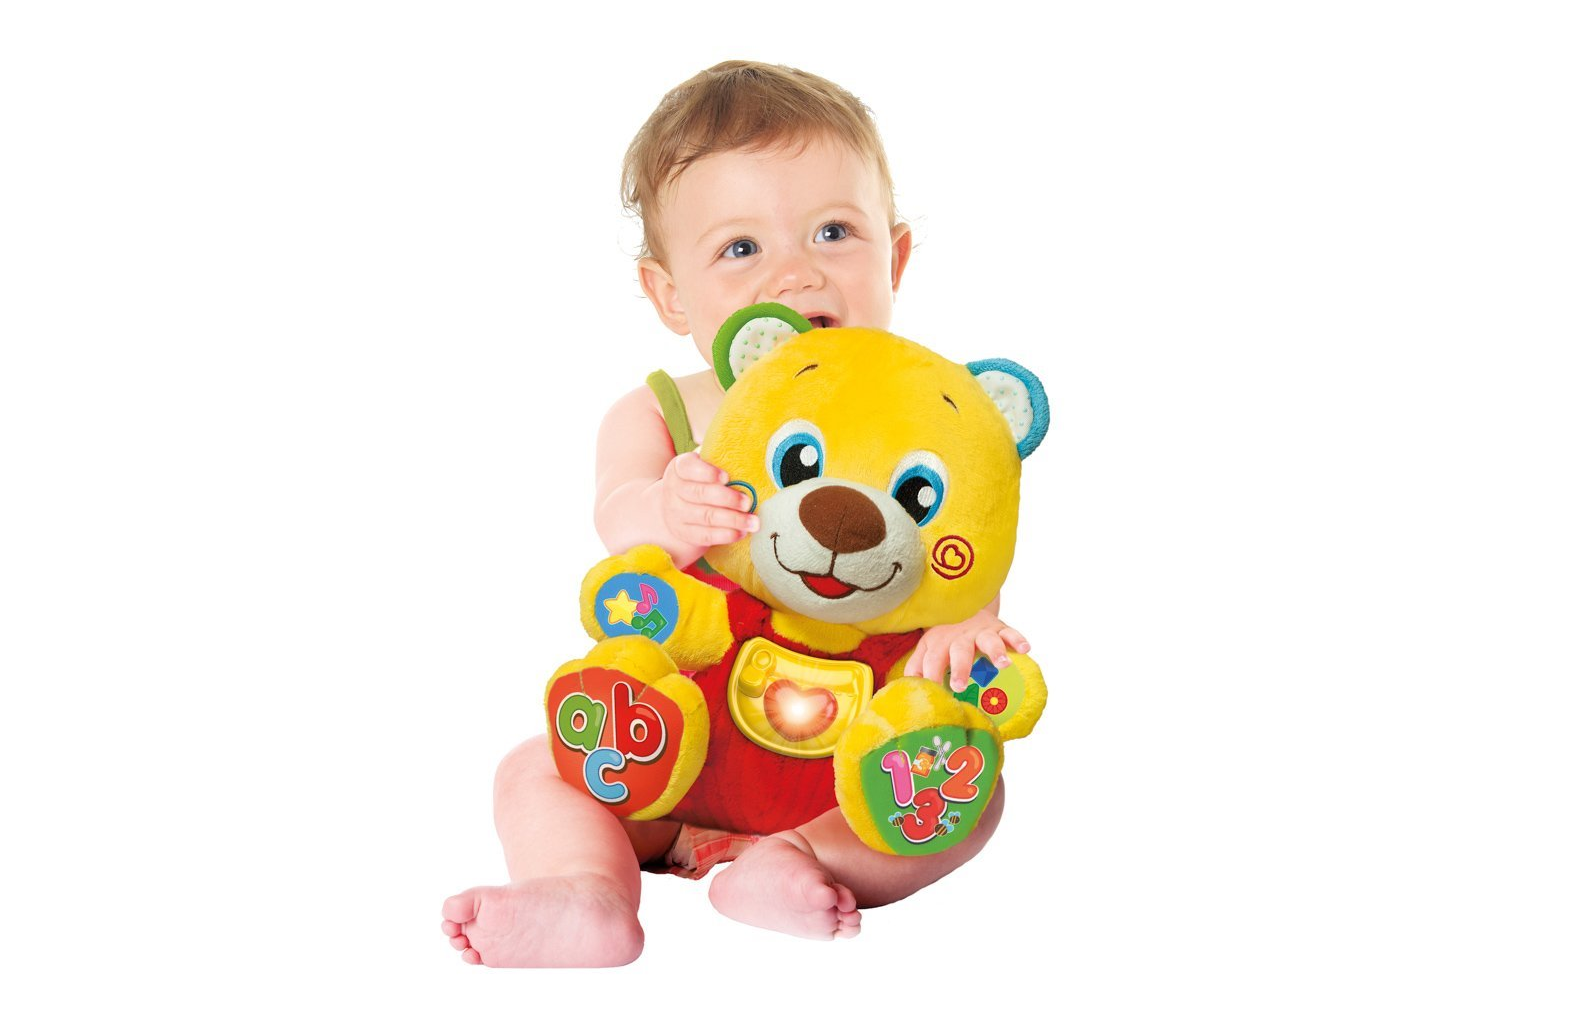 Didaktický medvídek Clementoni Interactive Baby Bear je vhodný pro všechny kojence od 6 měsíců.